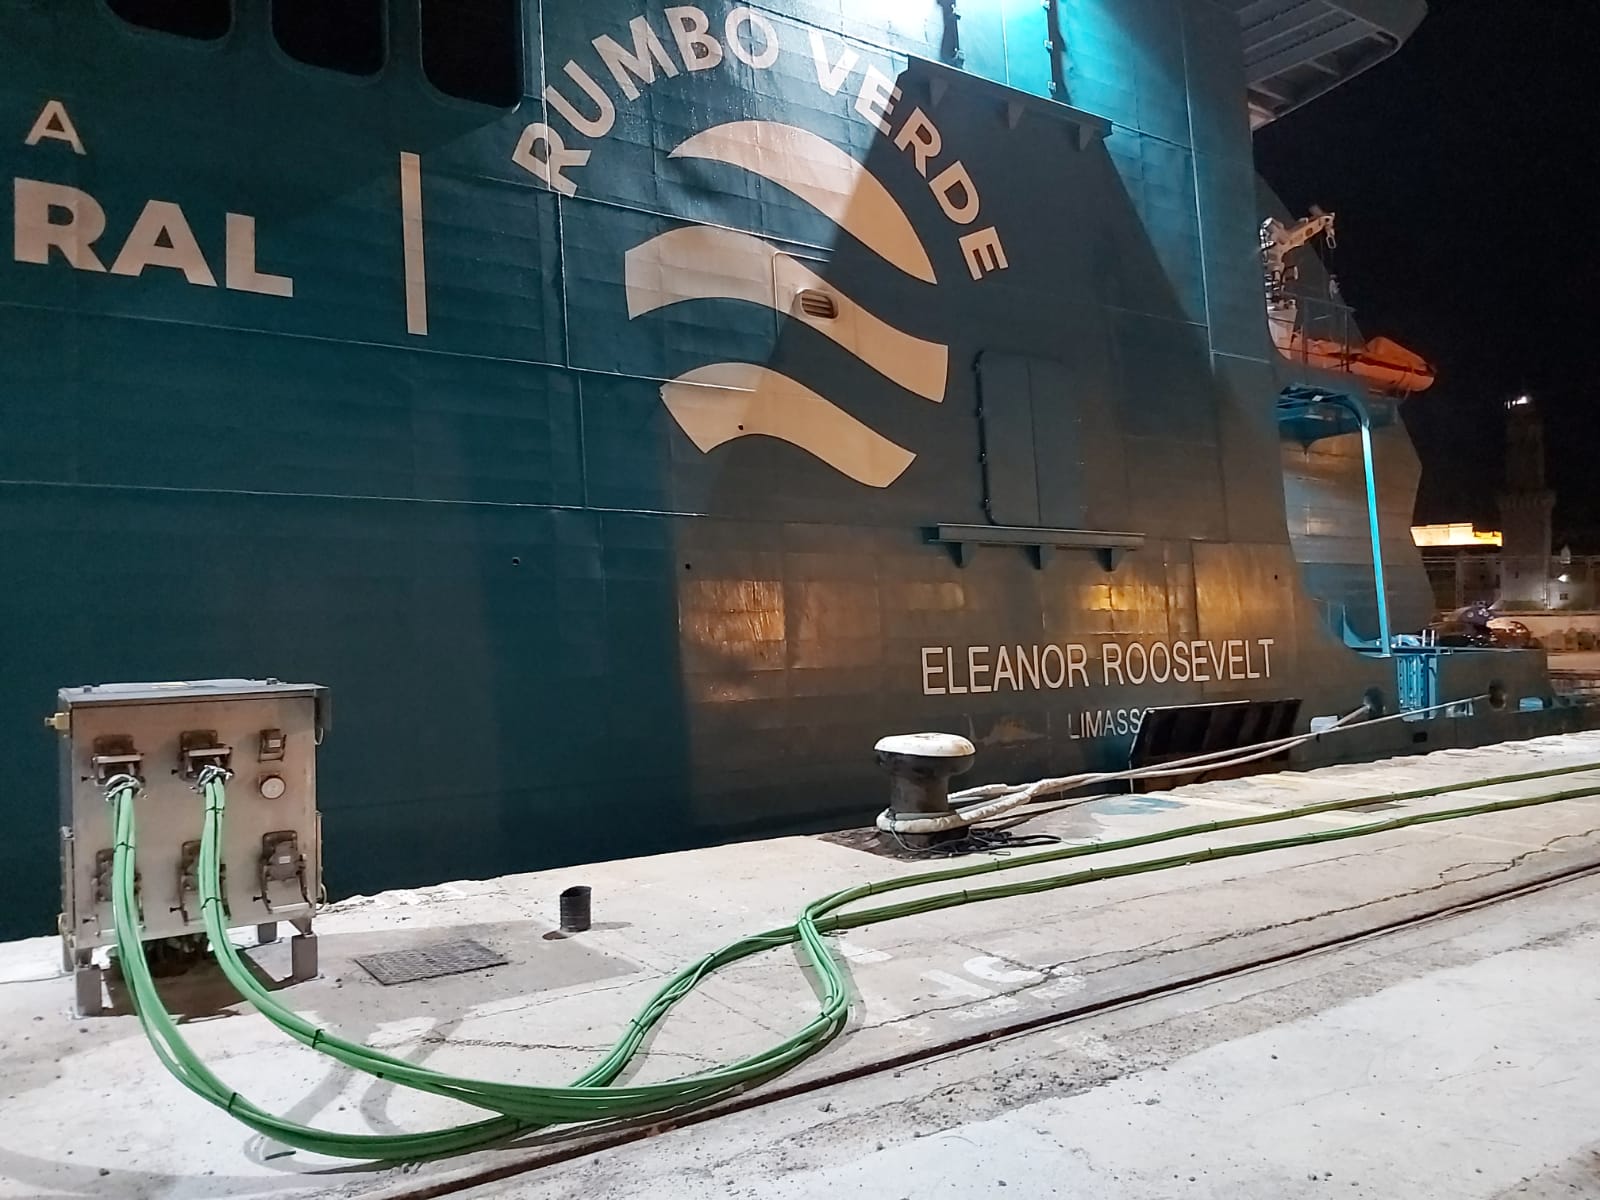 Comencen les proves del sistema de connexió elèctrica a terra per a ferris del port de Palma